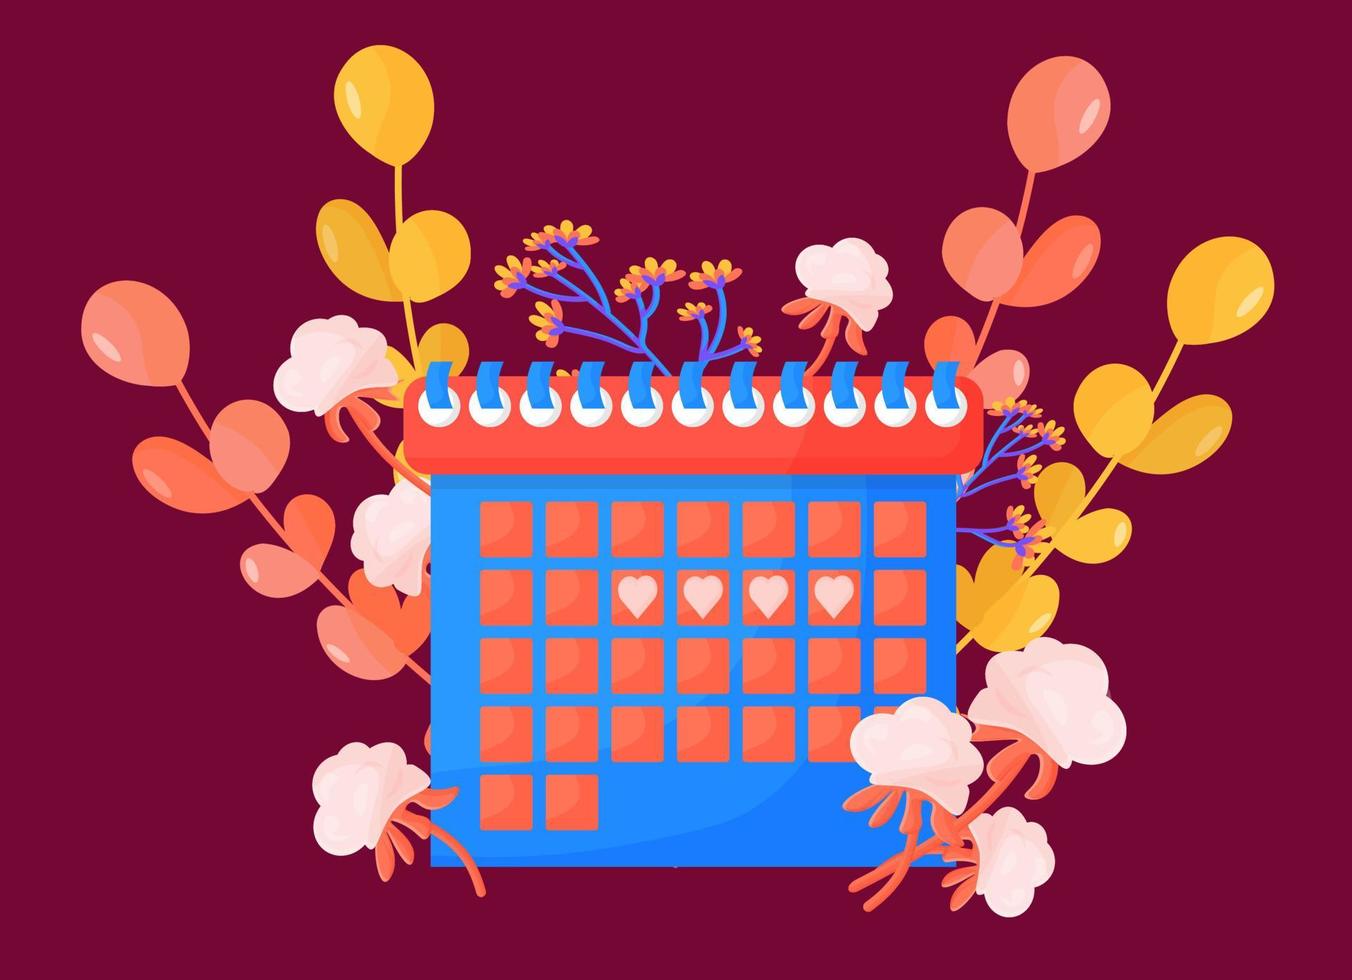 kalender för den kvinnliga menstruationscykeln, ägglossningskontroll. begreppet månatliga kvinnodagar. kalender med botaniska inslag, eukalyptusgrenar, bomull. vektor illustration i tecknad stil